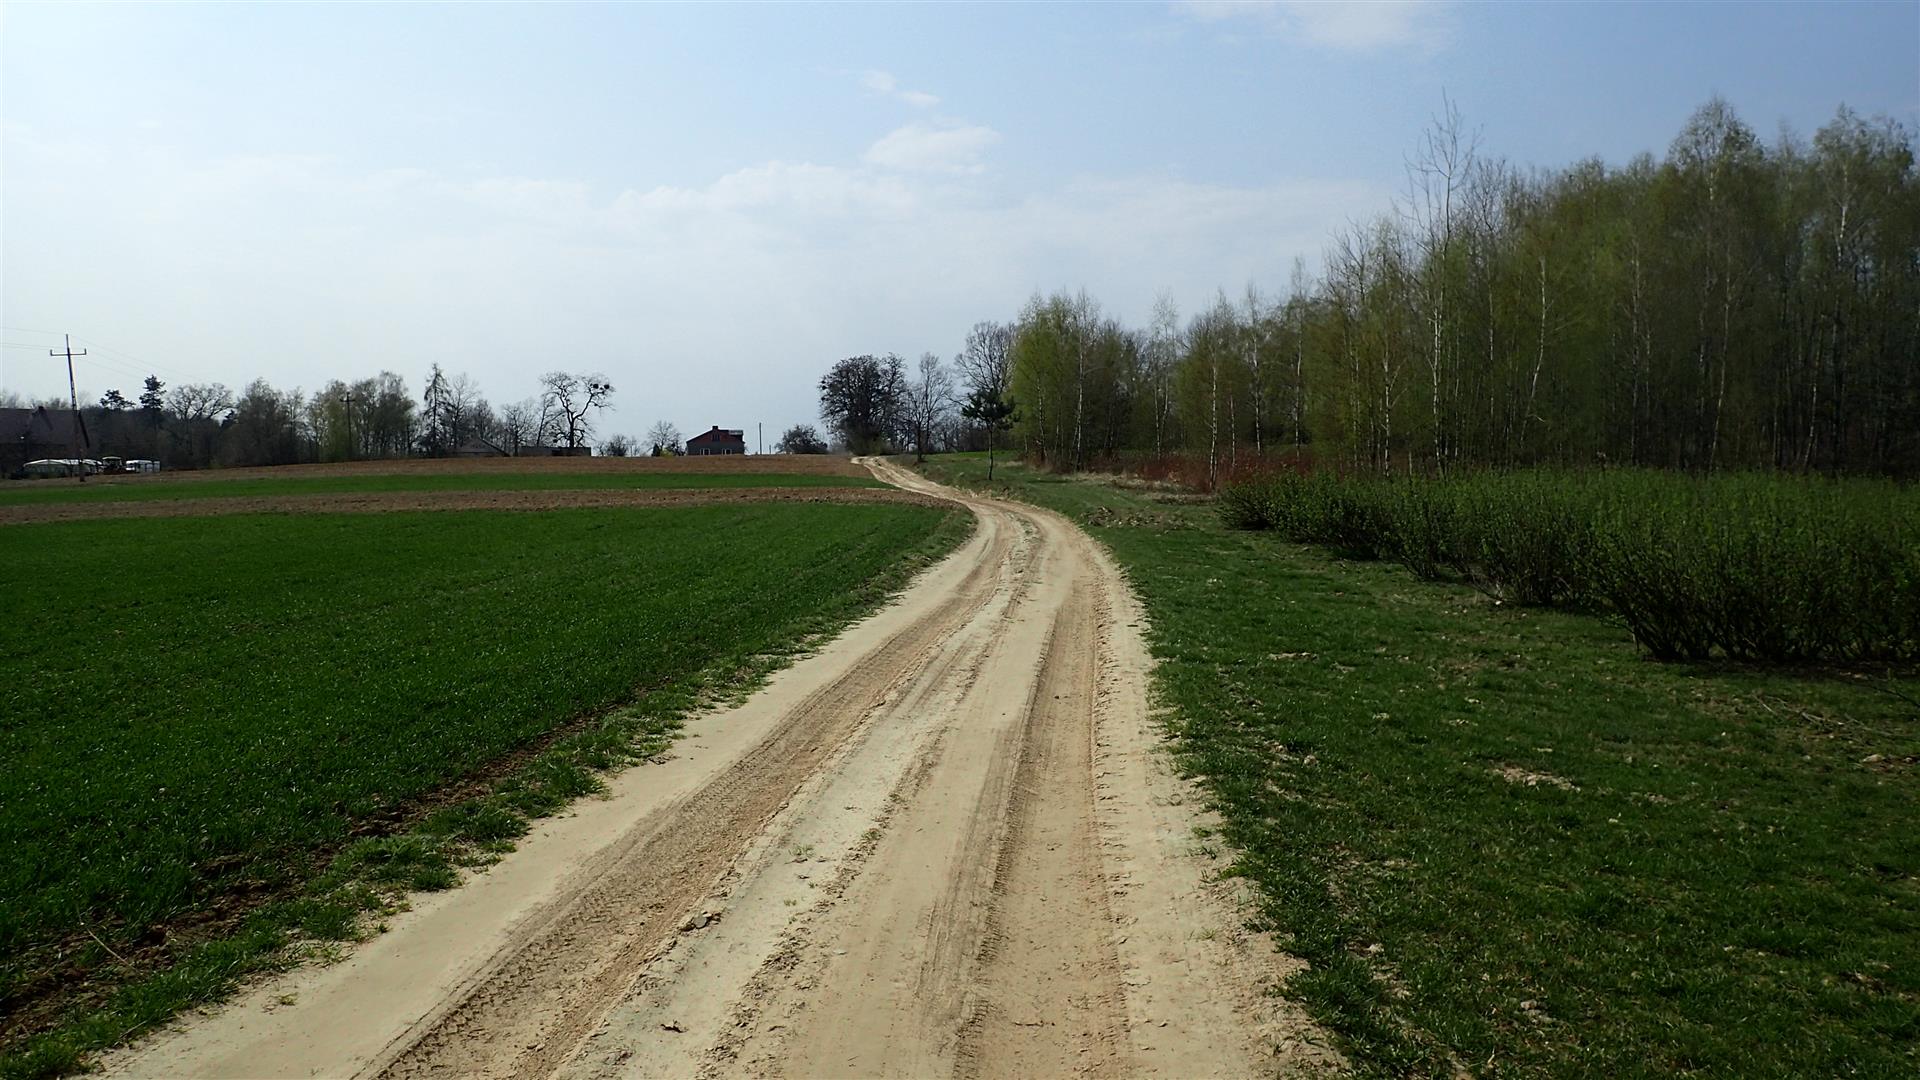 
                                                       Wiosennych szlaków po Powiecie Puławskim ciąg dalszy
                                                